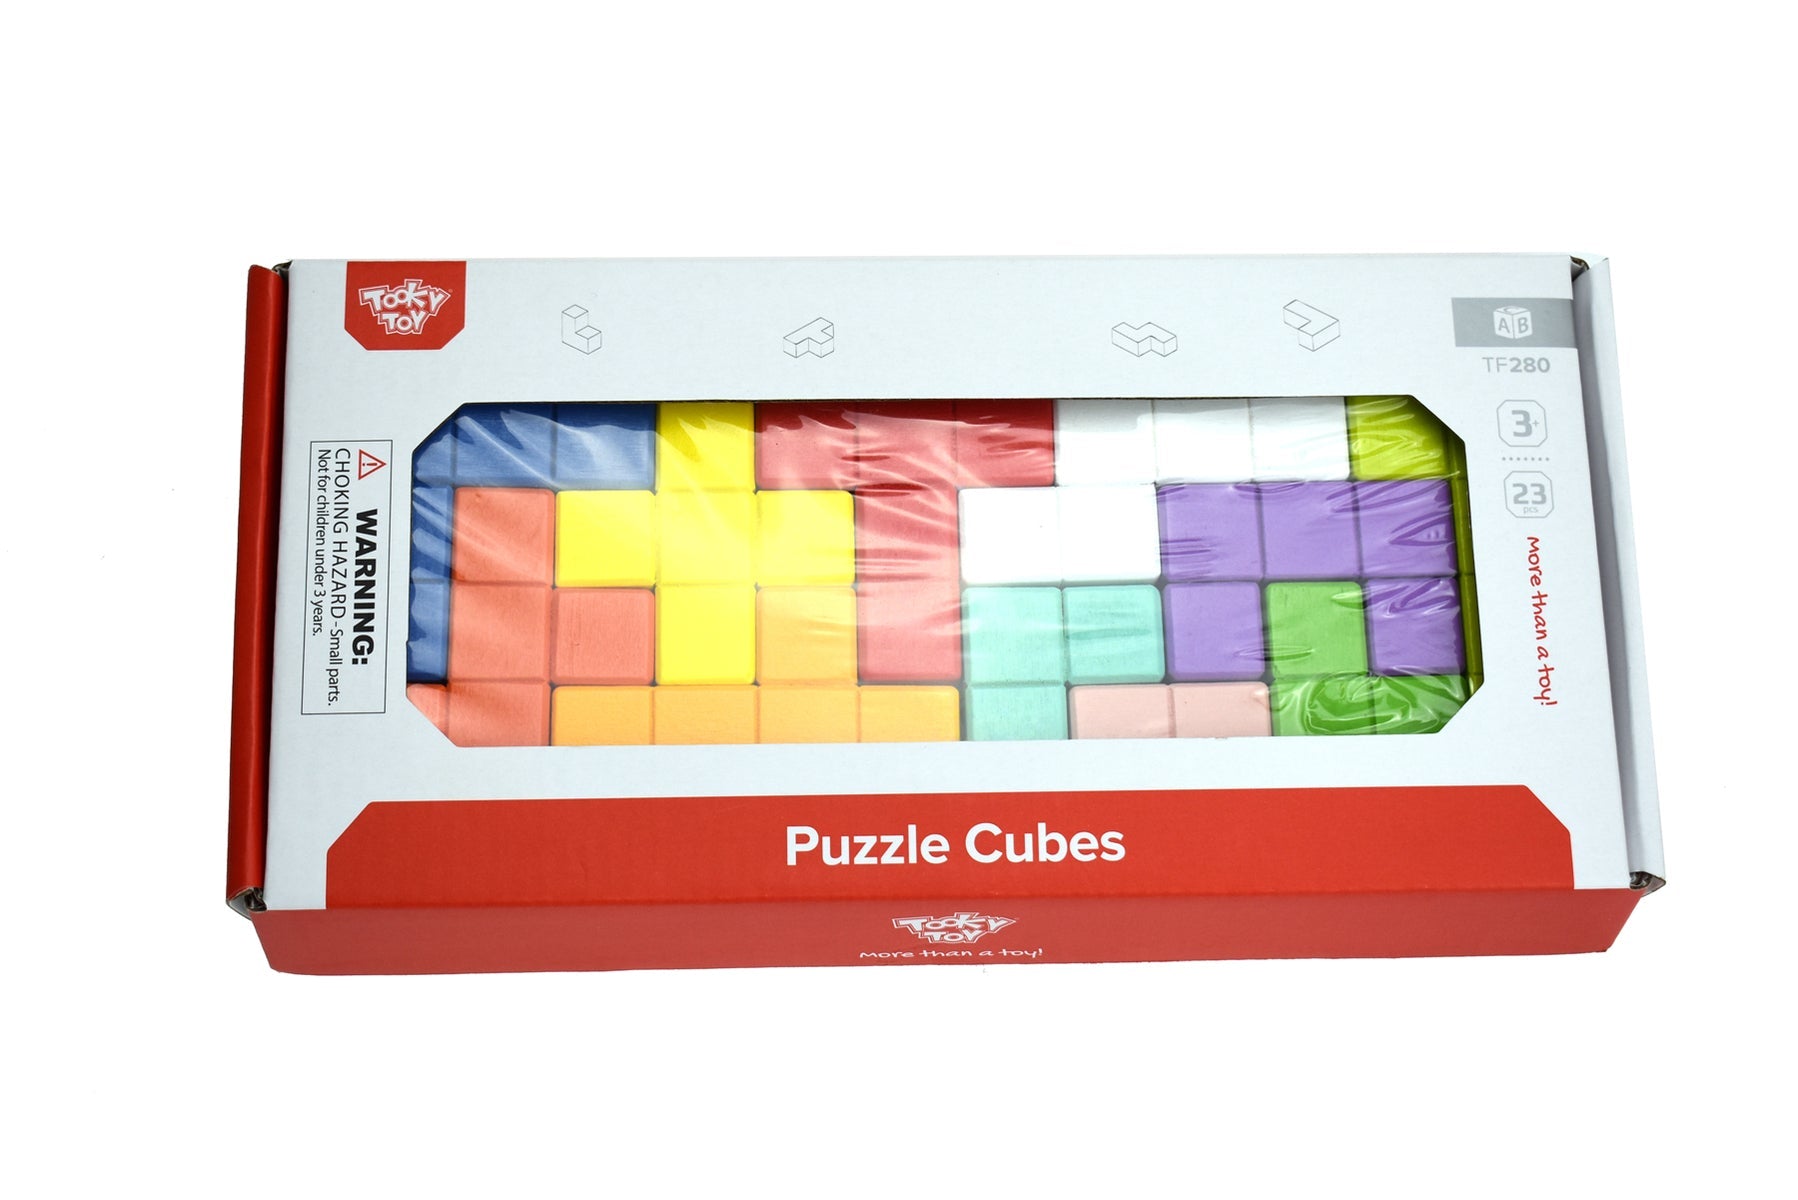 Puzzle Cubes Puzzle Game